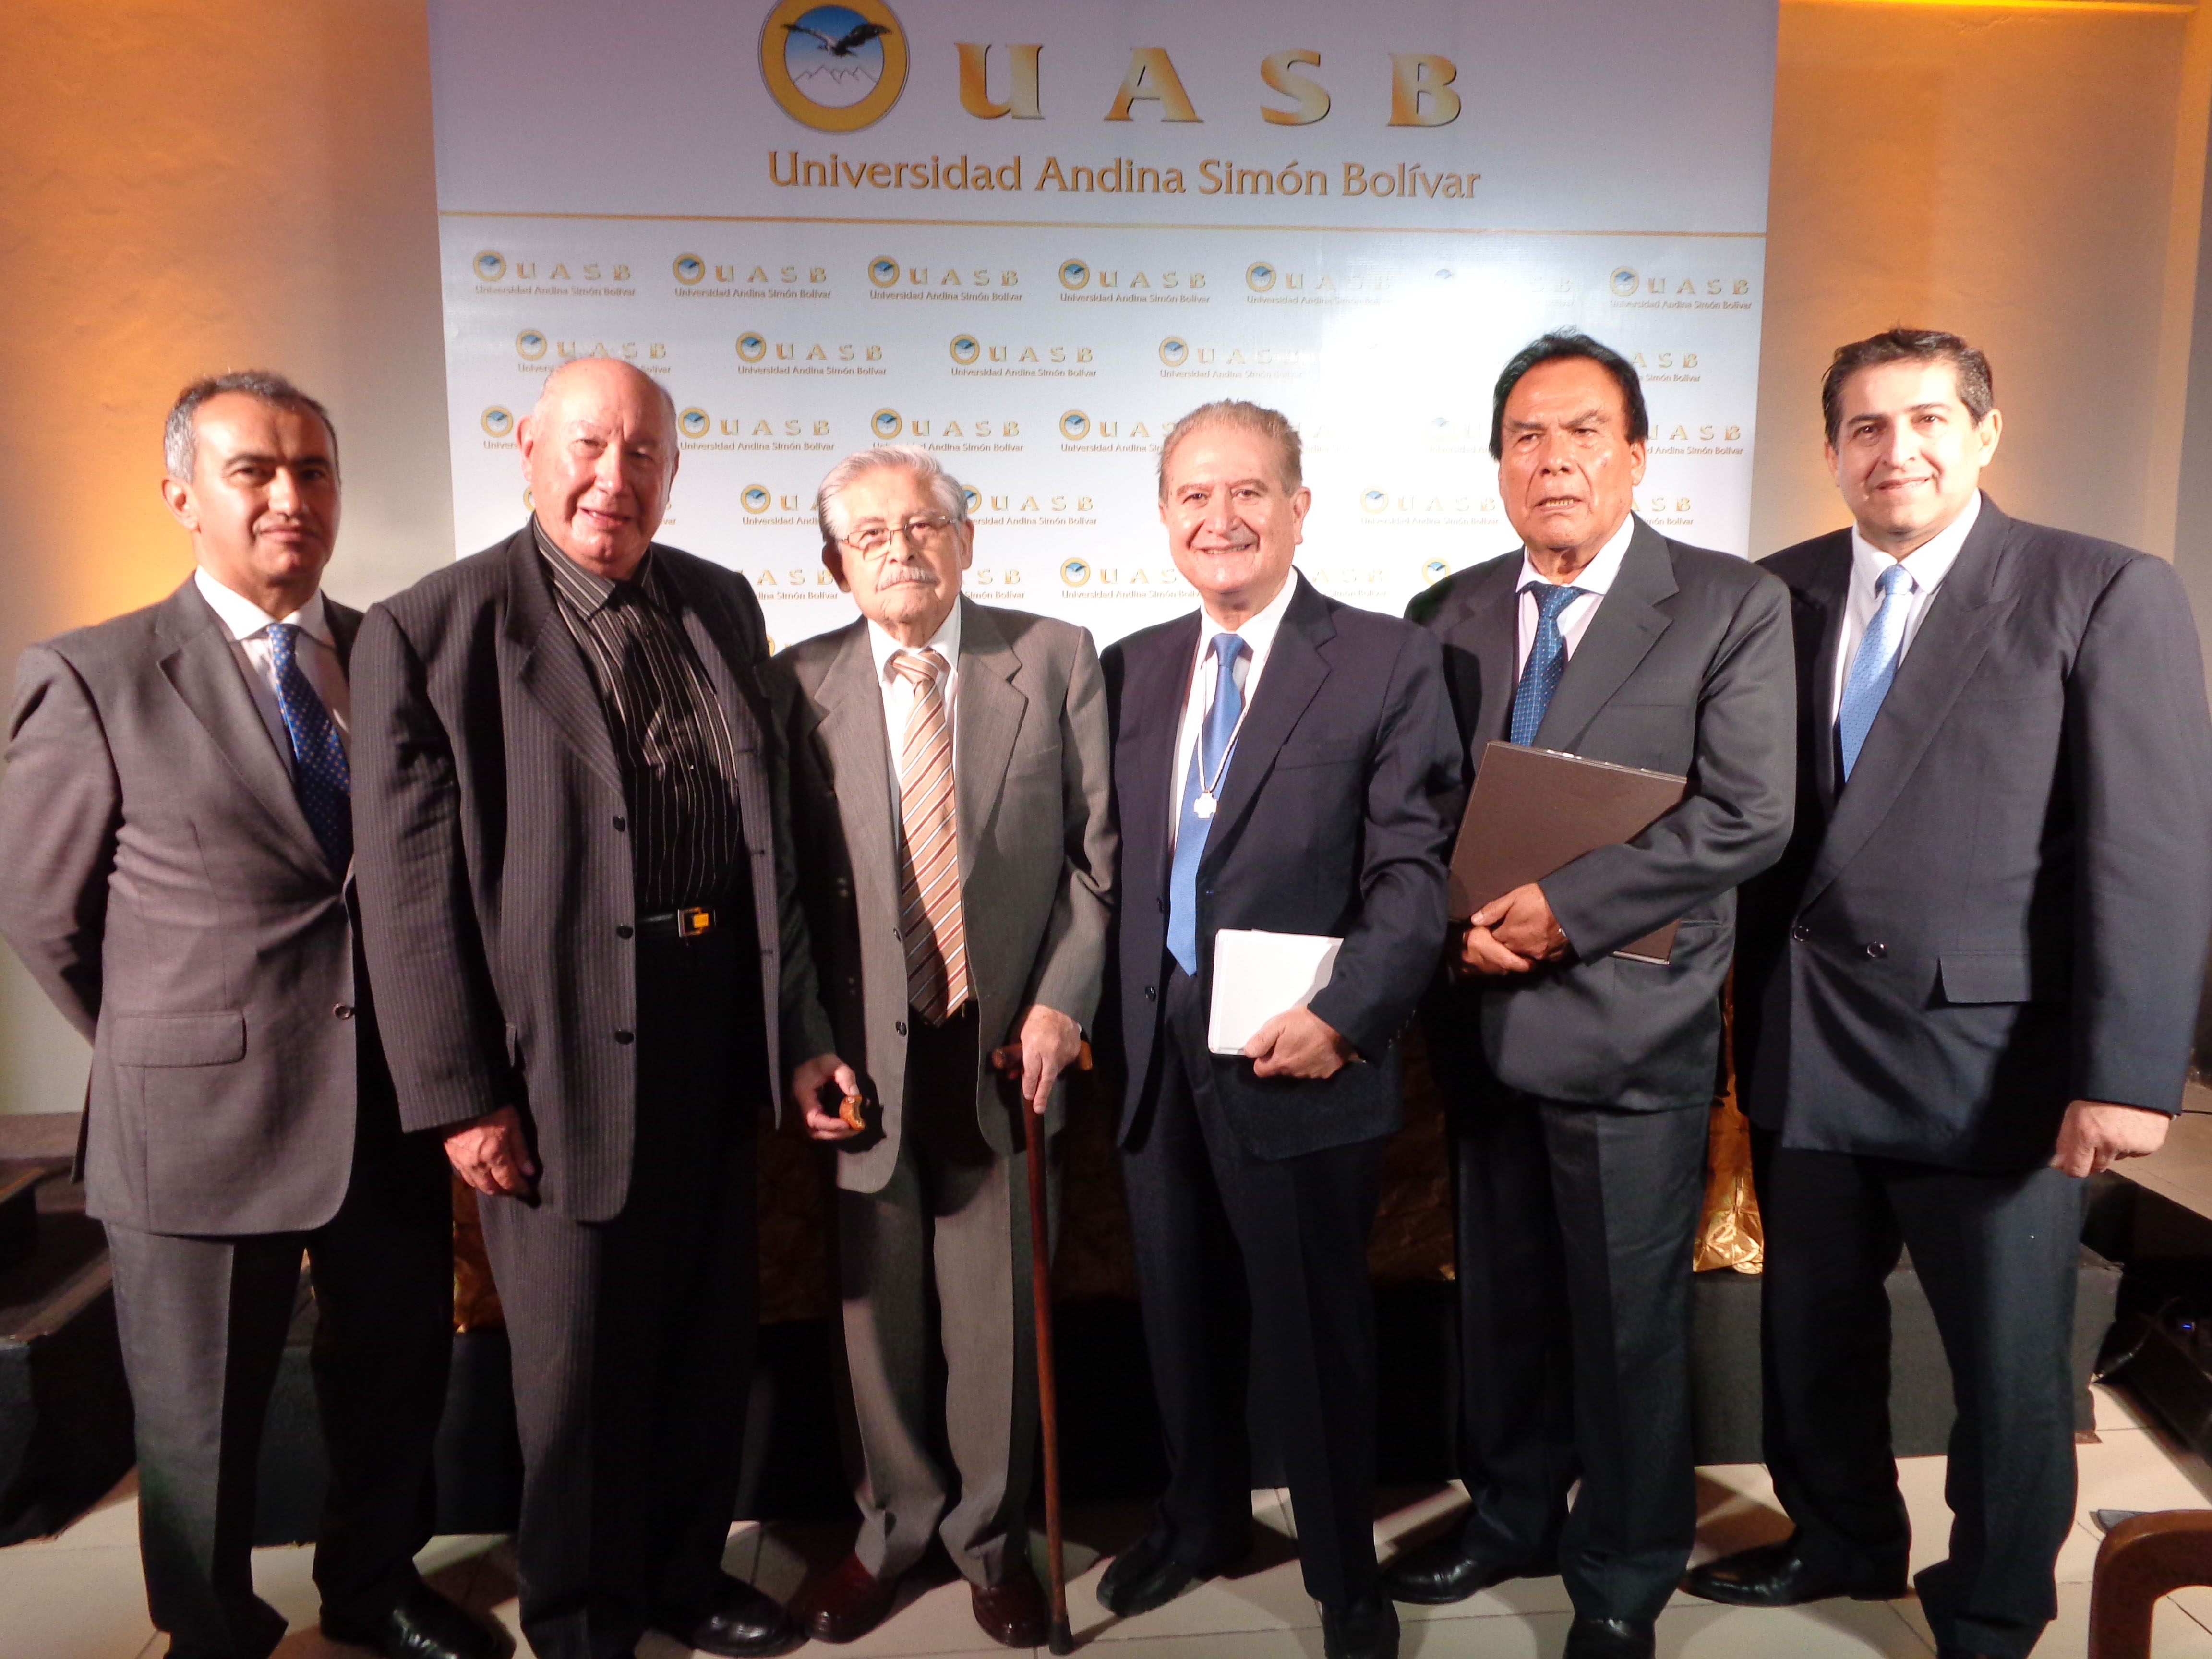  Dr. Cesar Montaño, Dr. Walter Kaune, Dr. Gastón Ledezma, Dr. José Luis Gutiérrez, Dr. Jaime Villalta, Dr. Duberty Soleto.